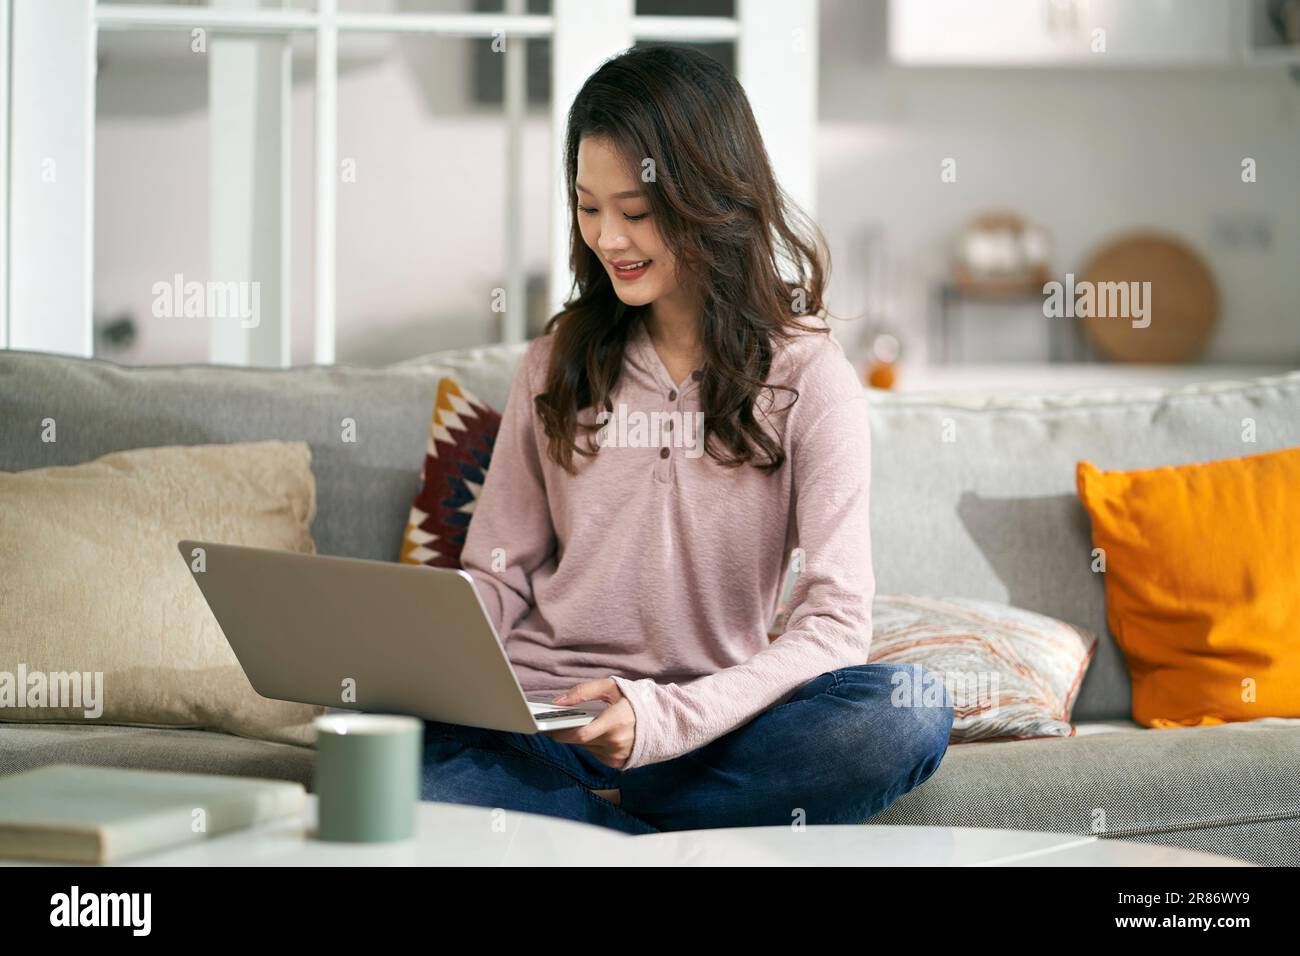 Junge asiatische Geschäftsfrau, die zu Hause auf der Couch sitzt und mit einem Laptop arbeitet Stockfoto